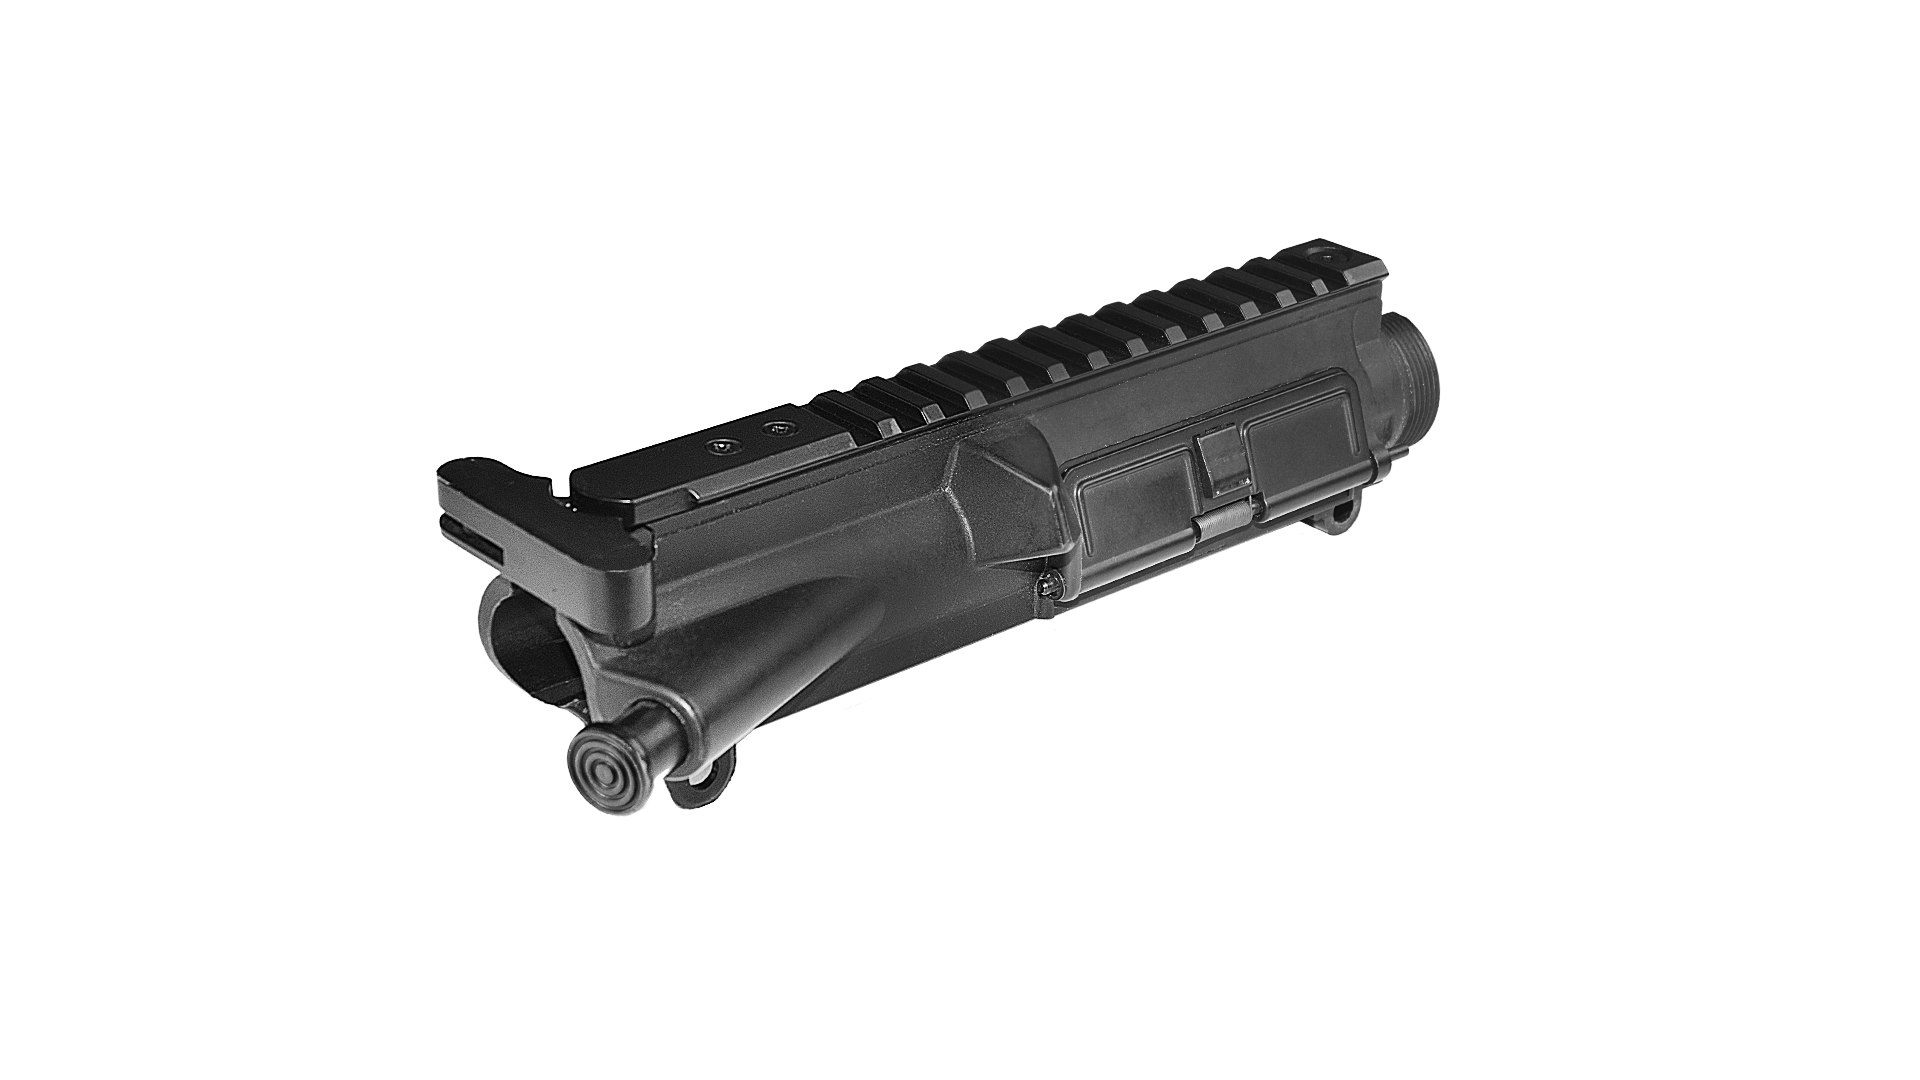 【MA-451】CXP-PELEADOR 塑膠上槍身組 - 黑色